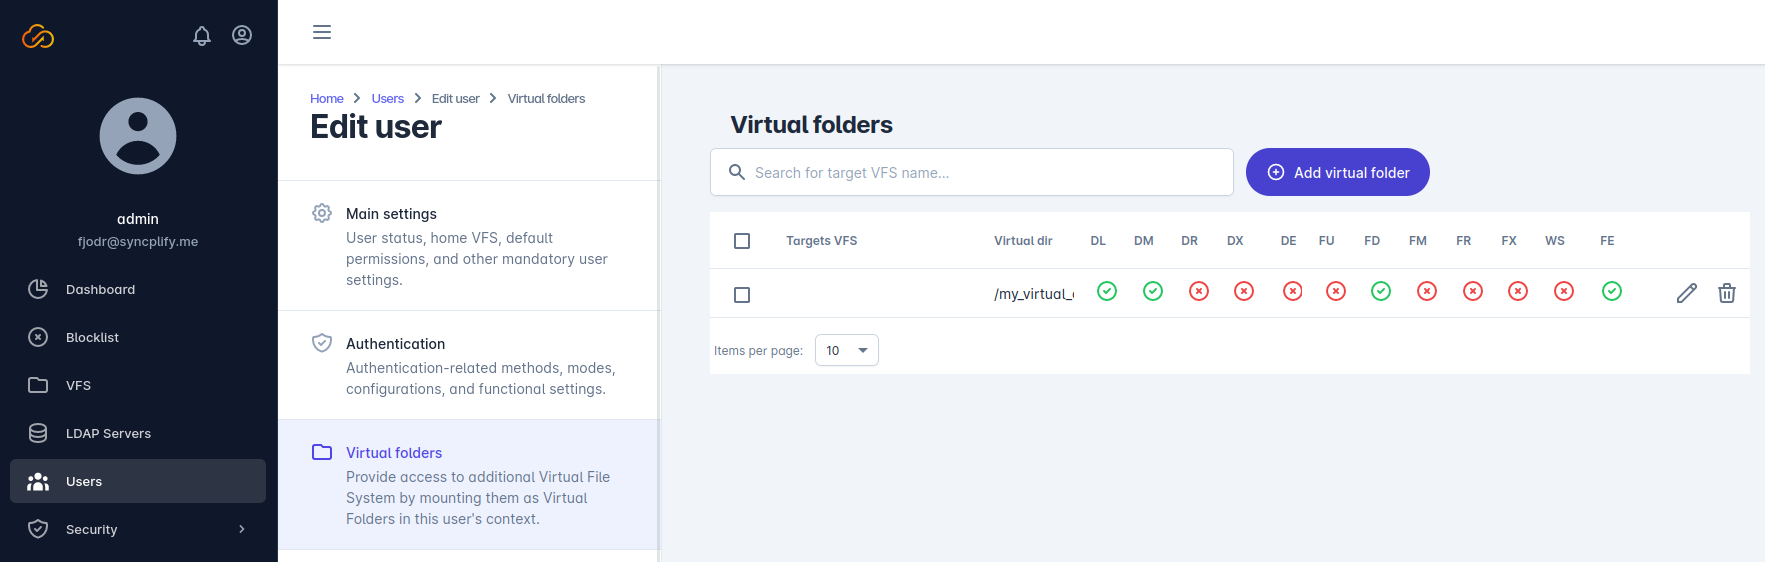 virtual_folders